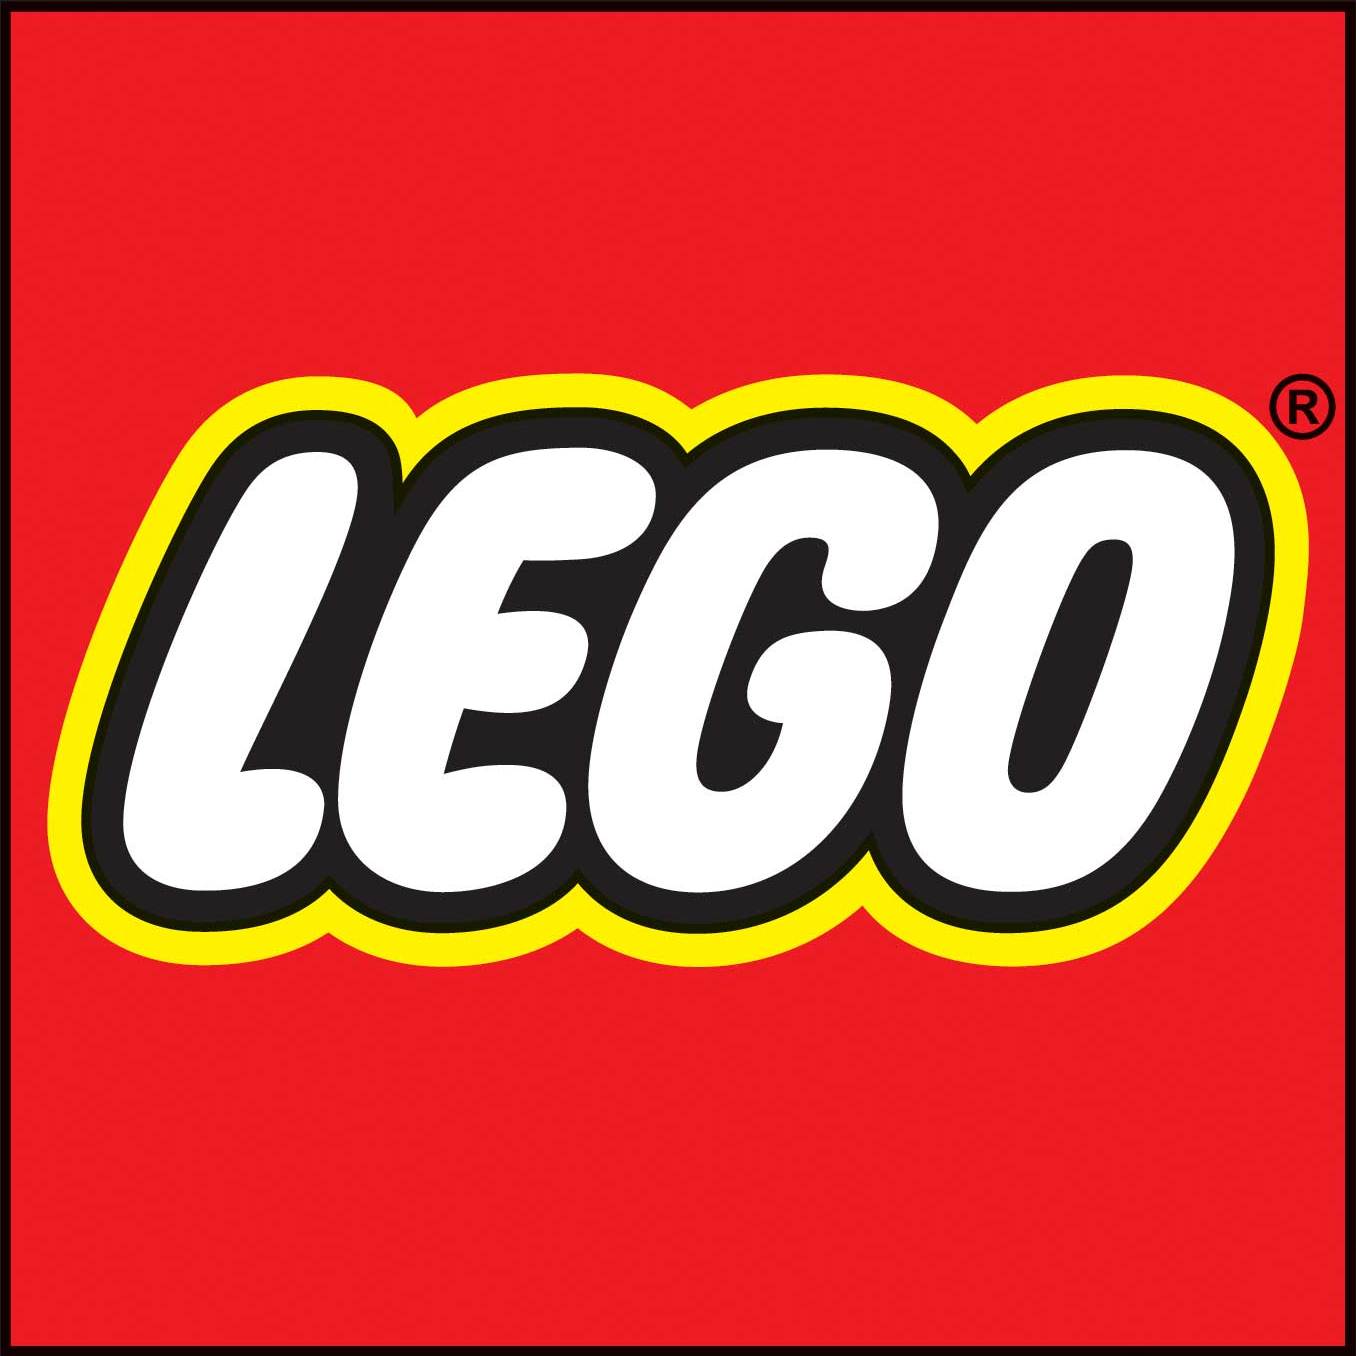 Lego logo clip art clipart